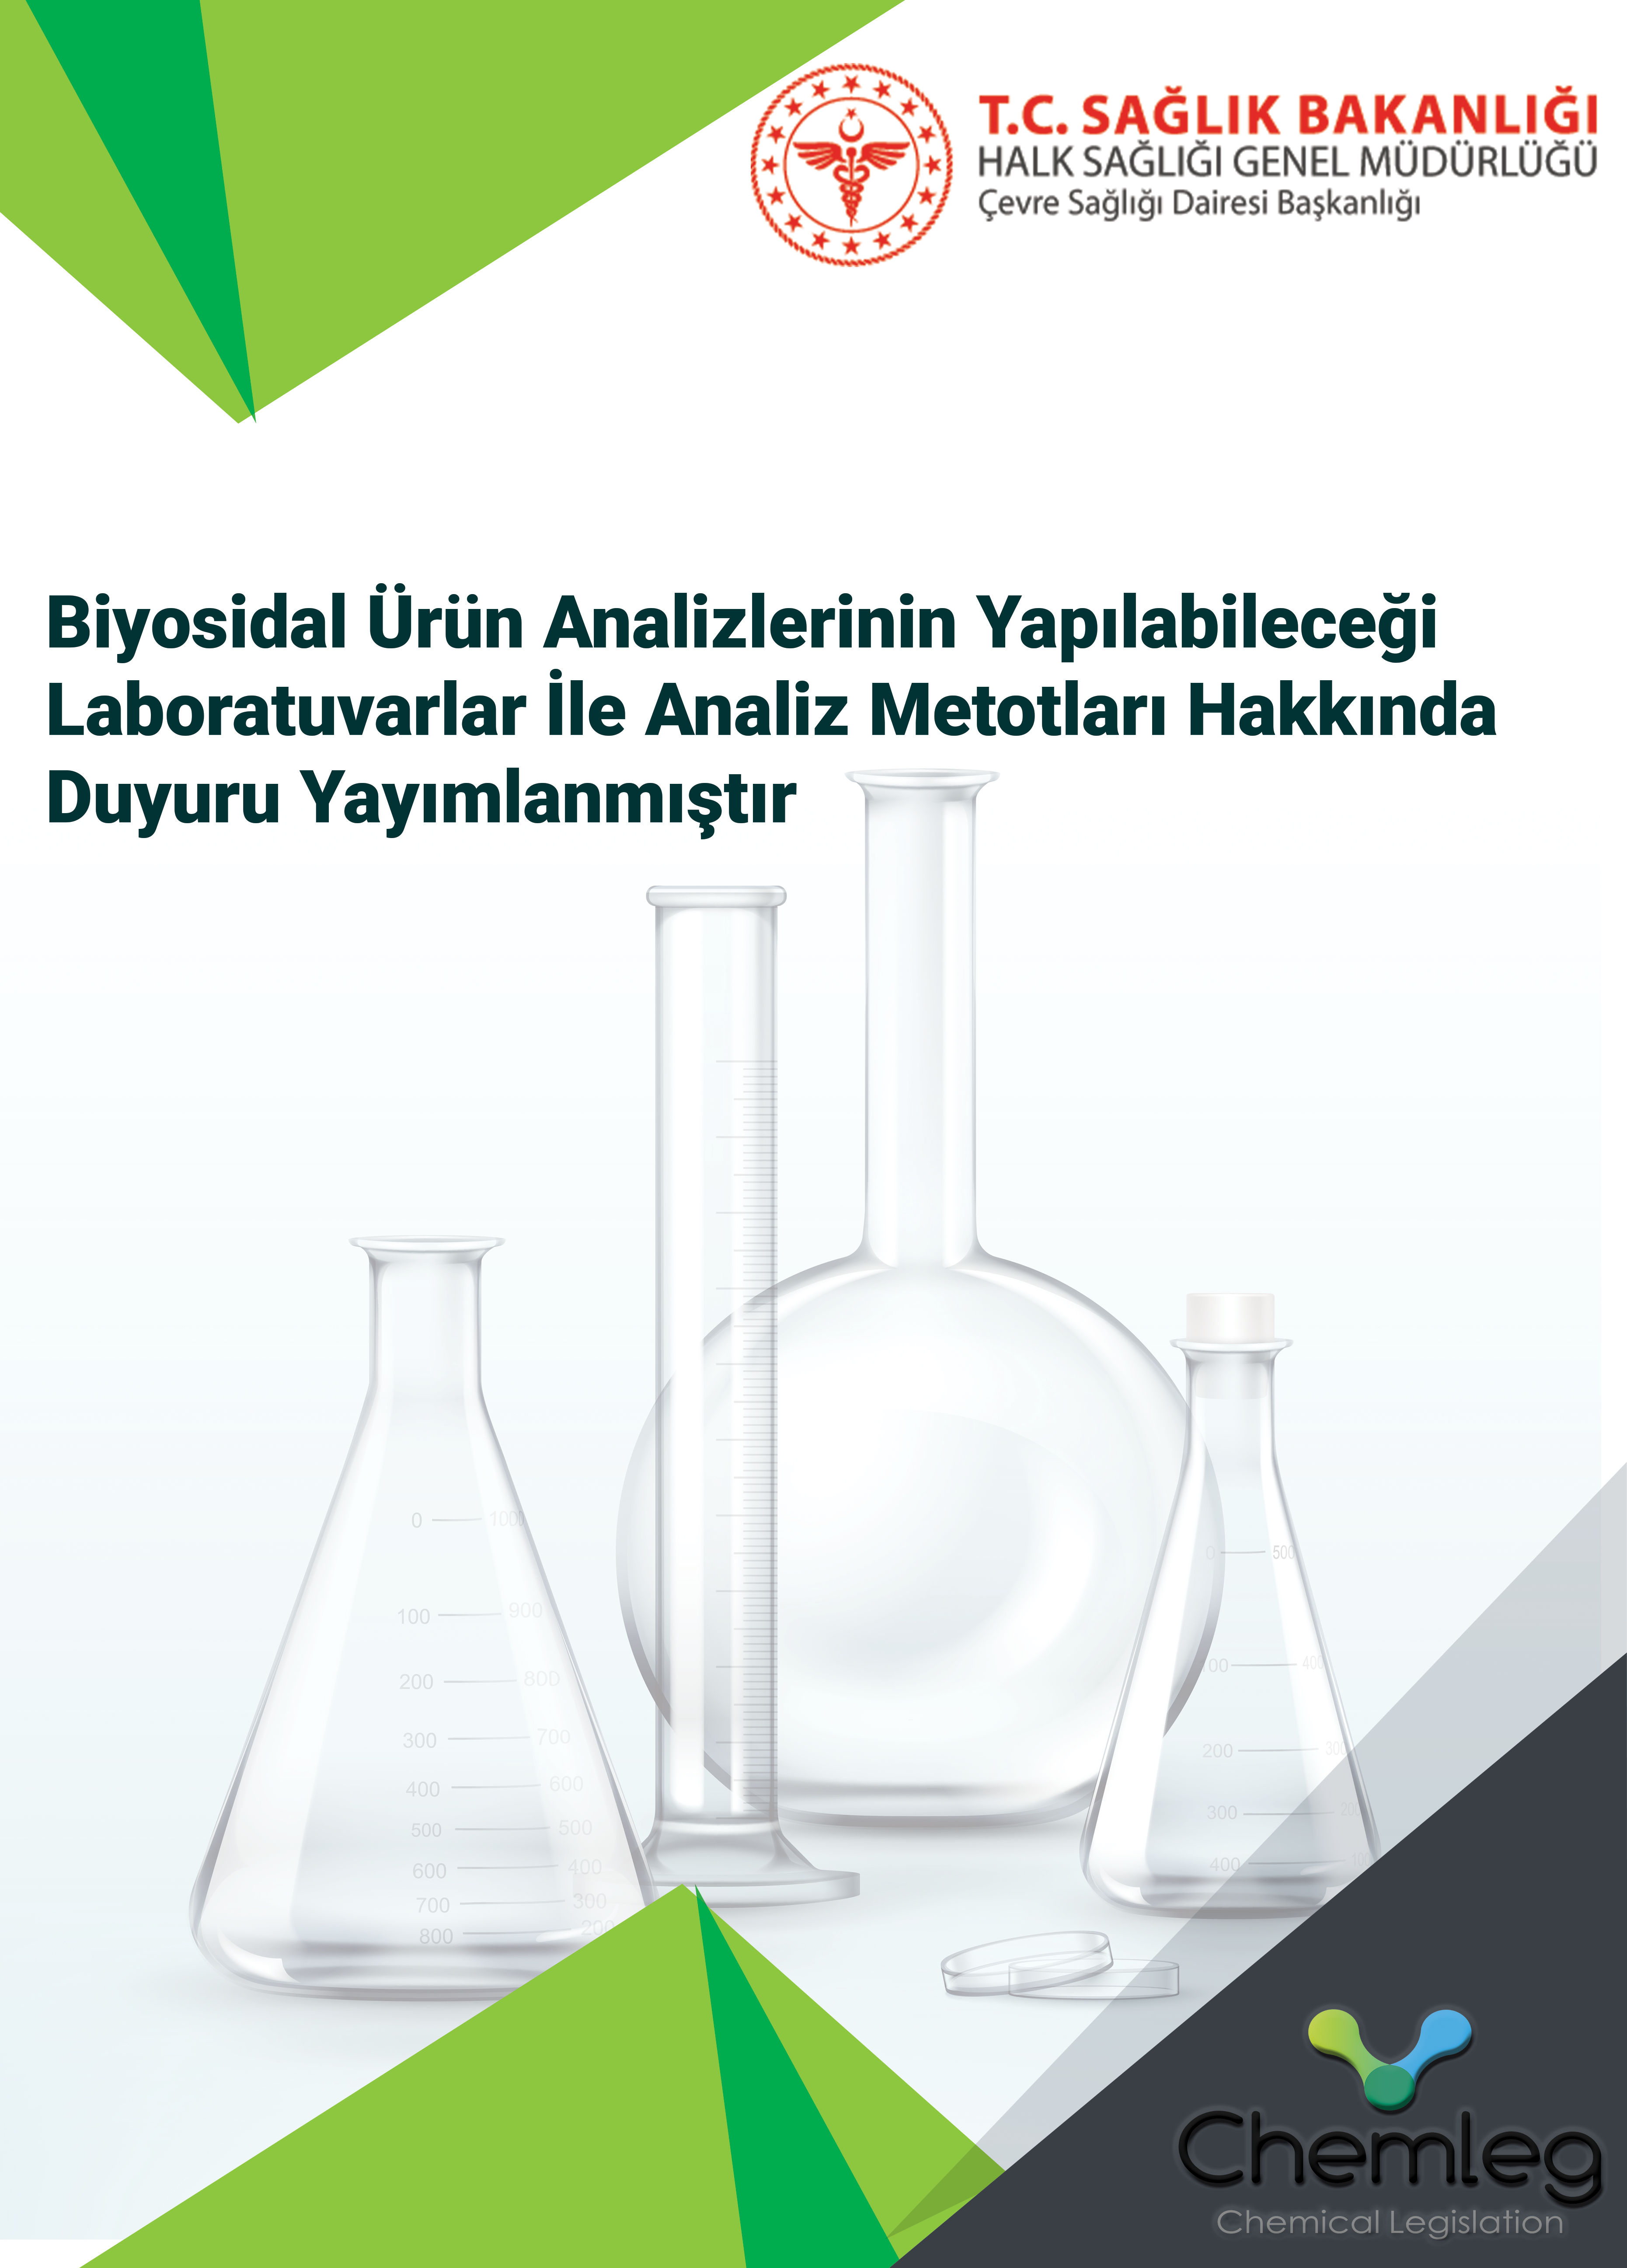 Biyosidal Ürün Analizlerinin Yapılabileceği Laboratuvarlar İle Analiz Metotları Hakkında Duyuru Yayımlanmıştır